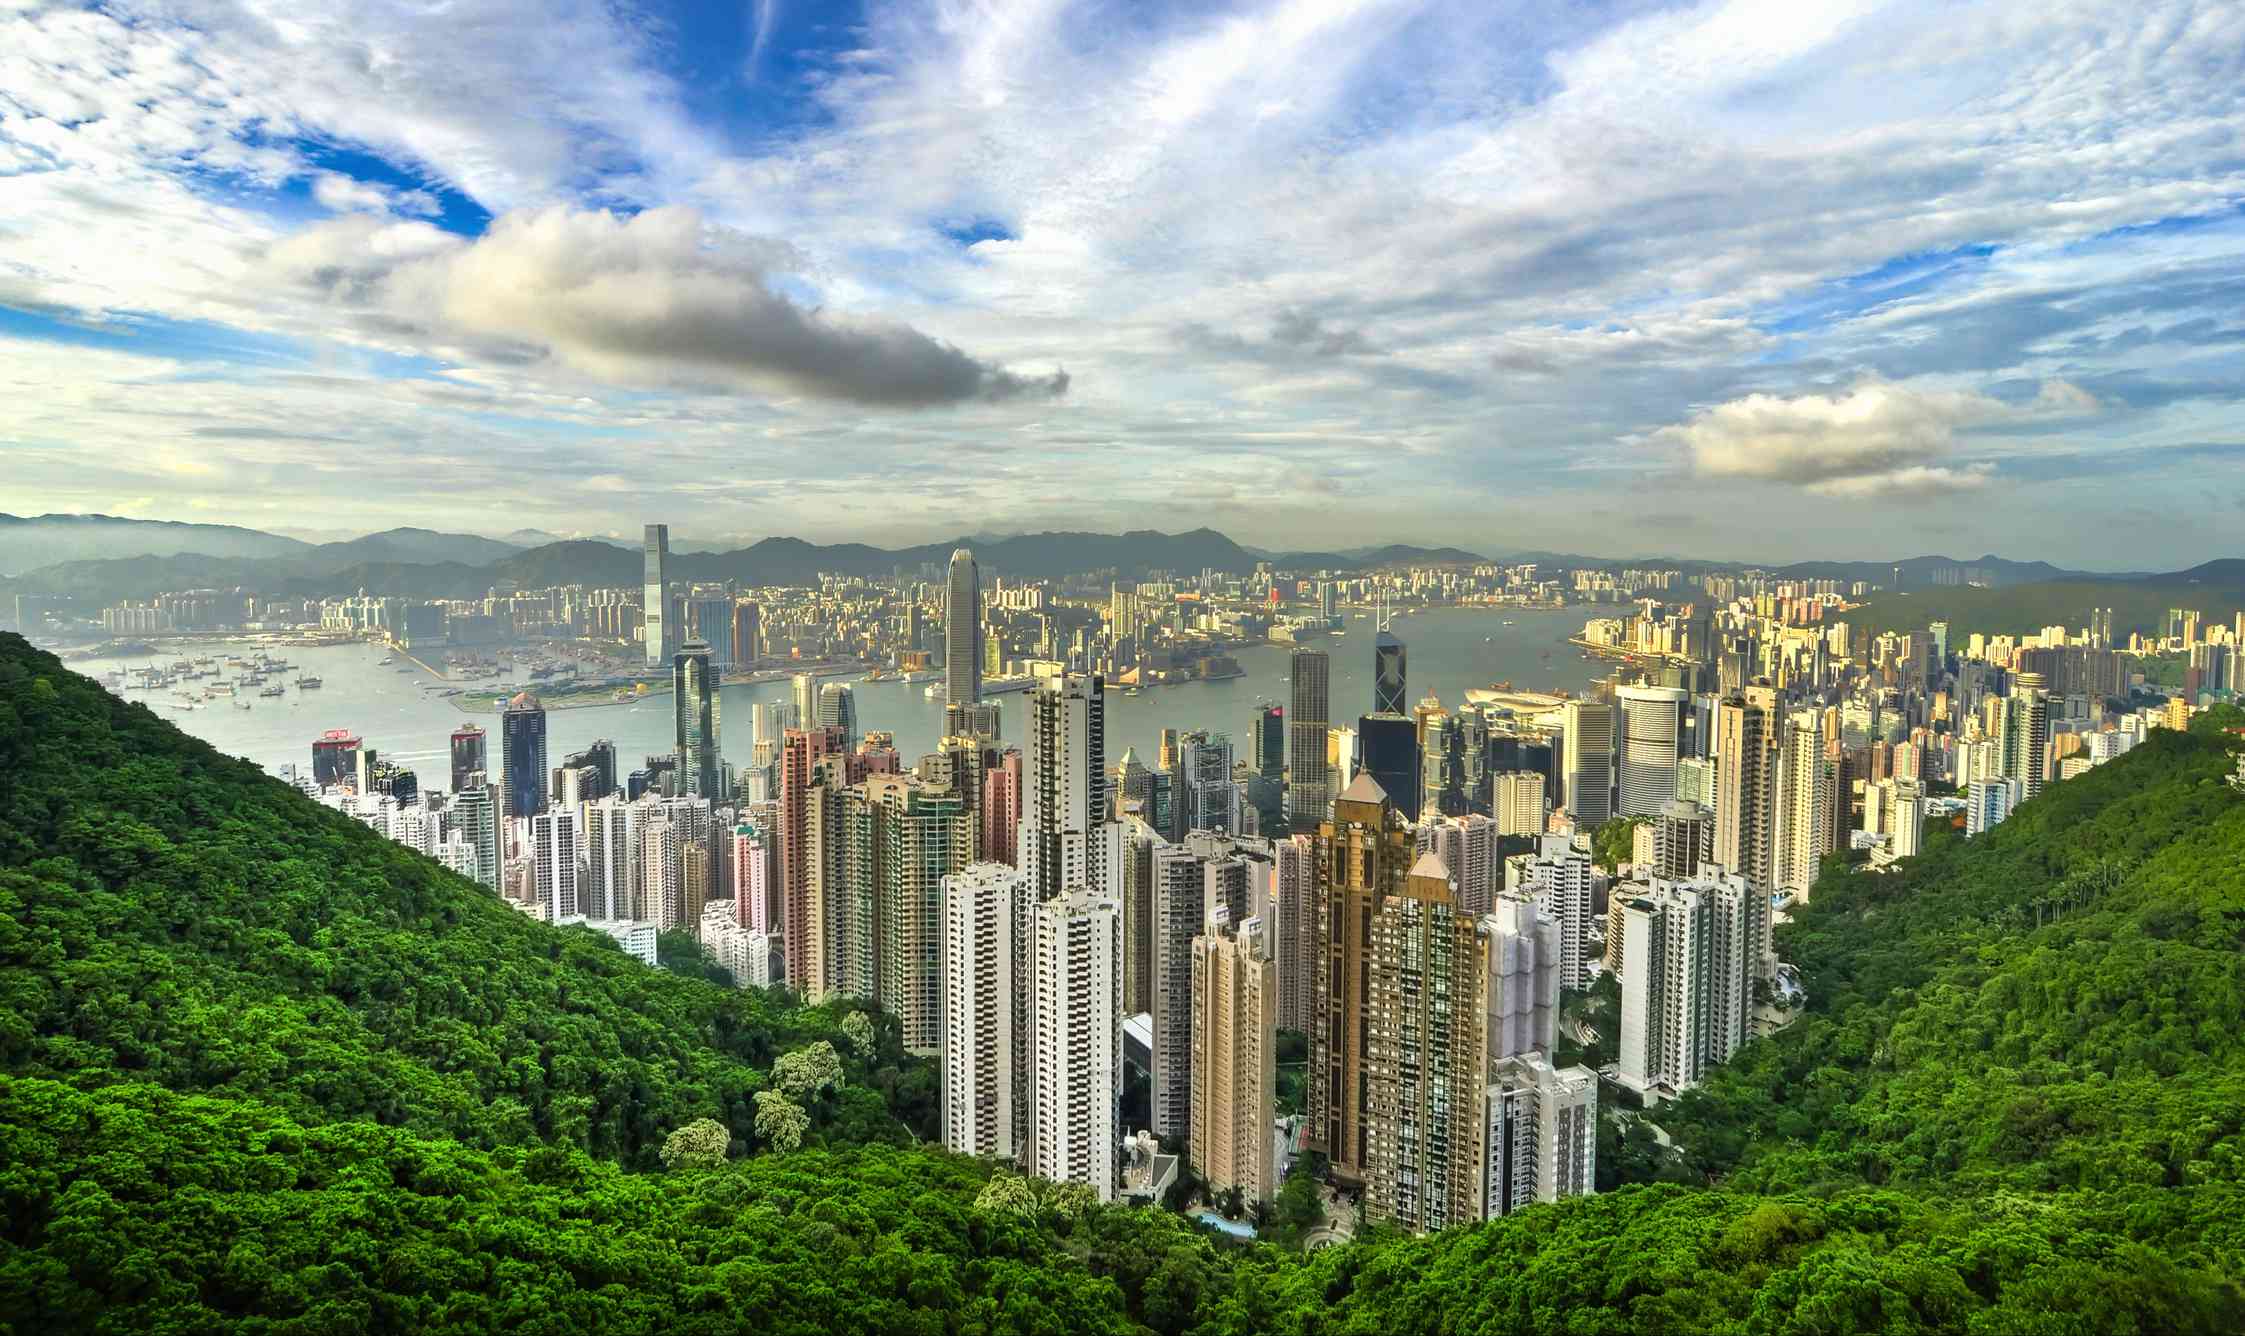 Vista desde la exuberante montaña verde, el Pico Victoria, mirando hacia abajo a los rascacielos de la ciudad de Hong Kong con un cielo azul brillante lleno de nubes blancas por encima